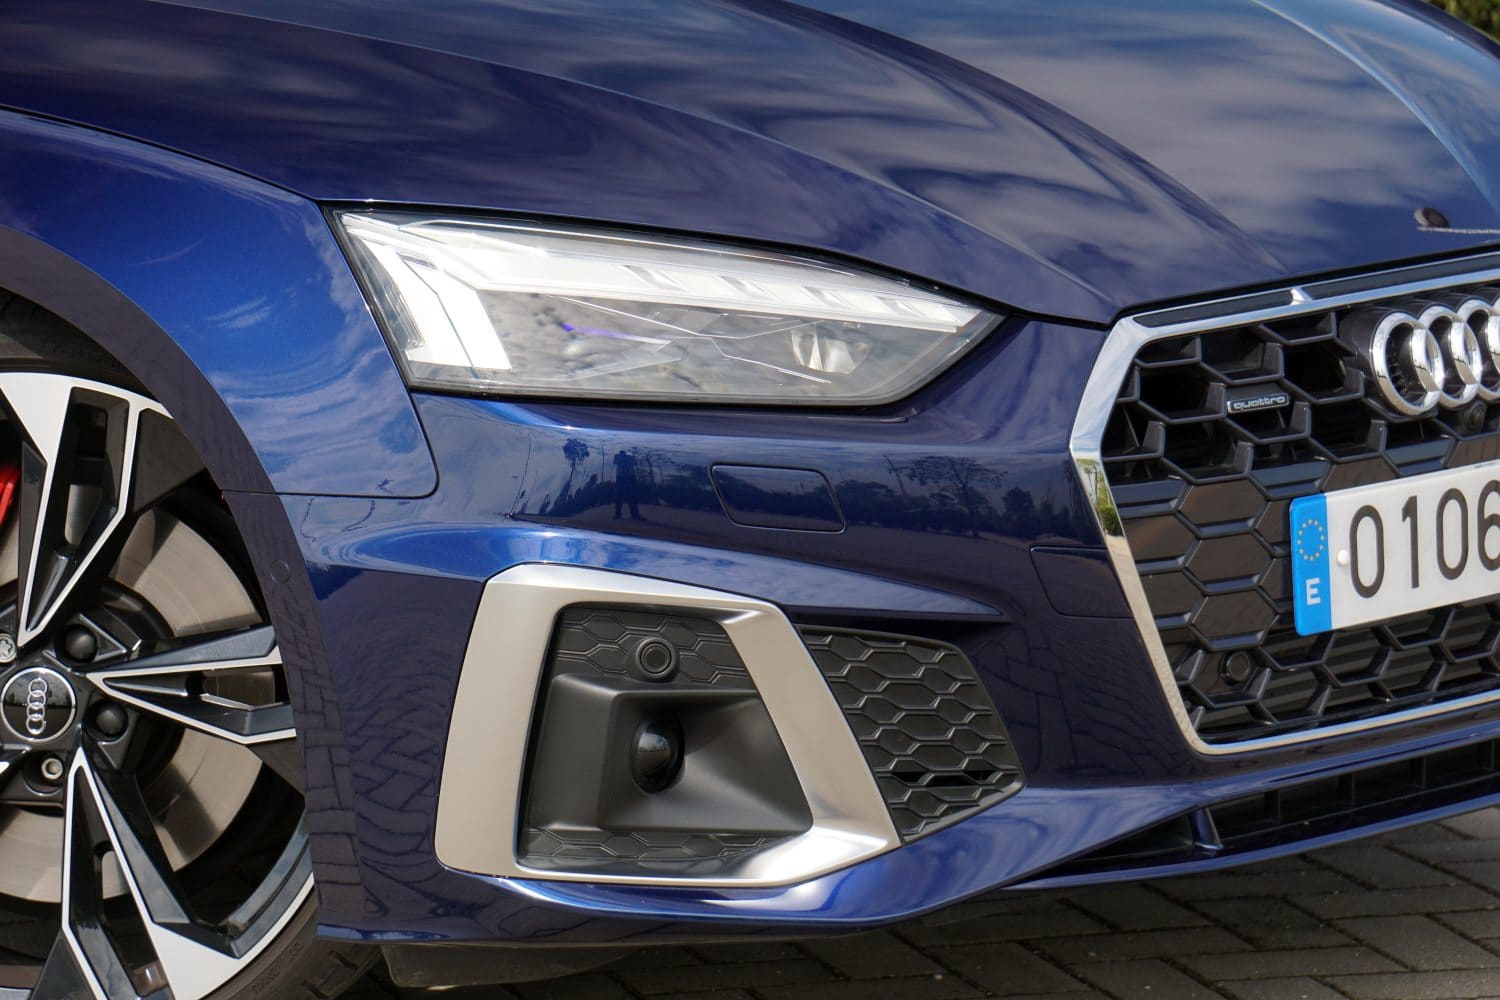 Llegan más detalles del nuevo Audi A5 Sportback. Y son muy interesantes